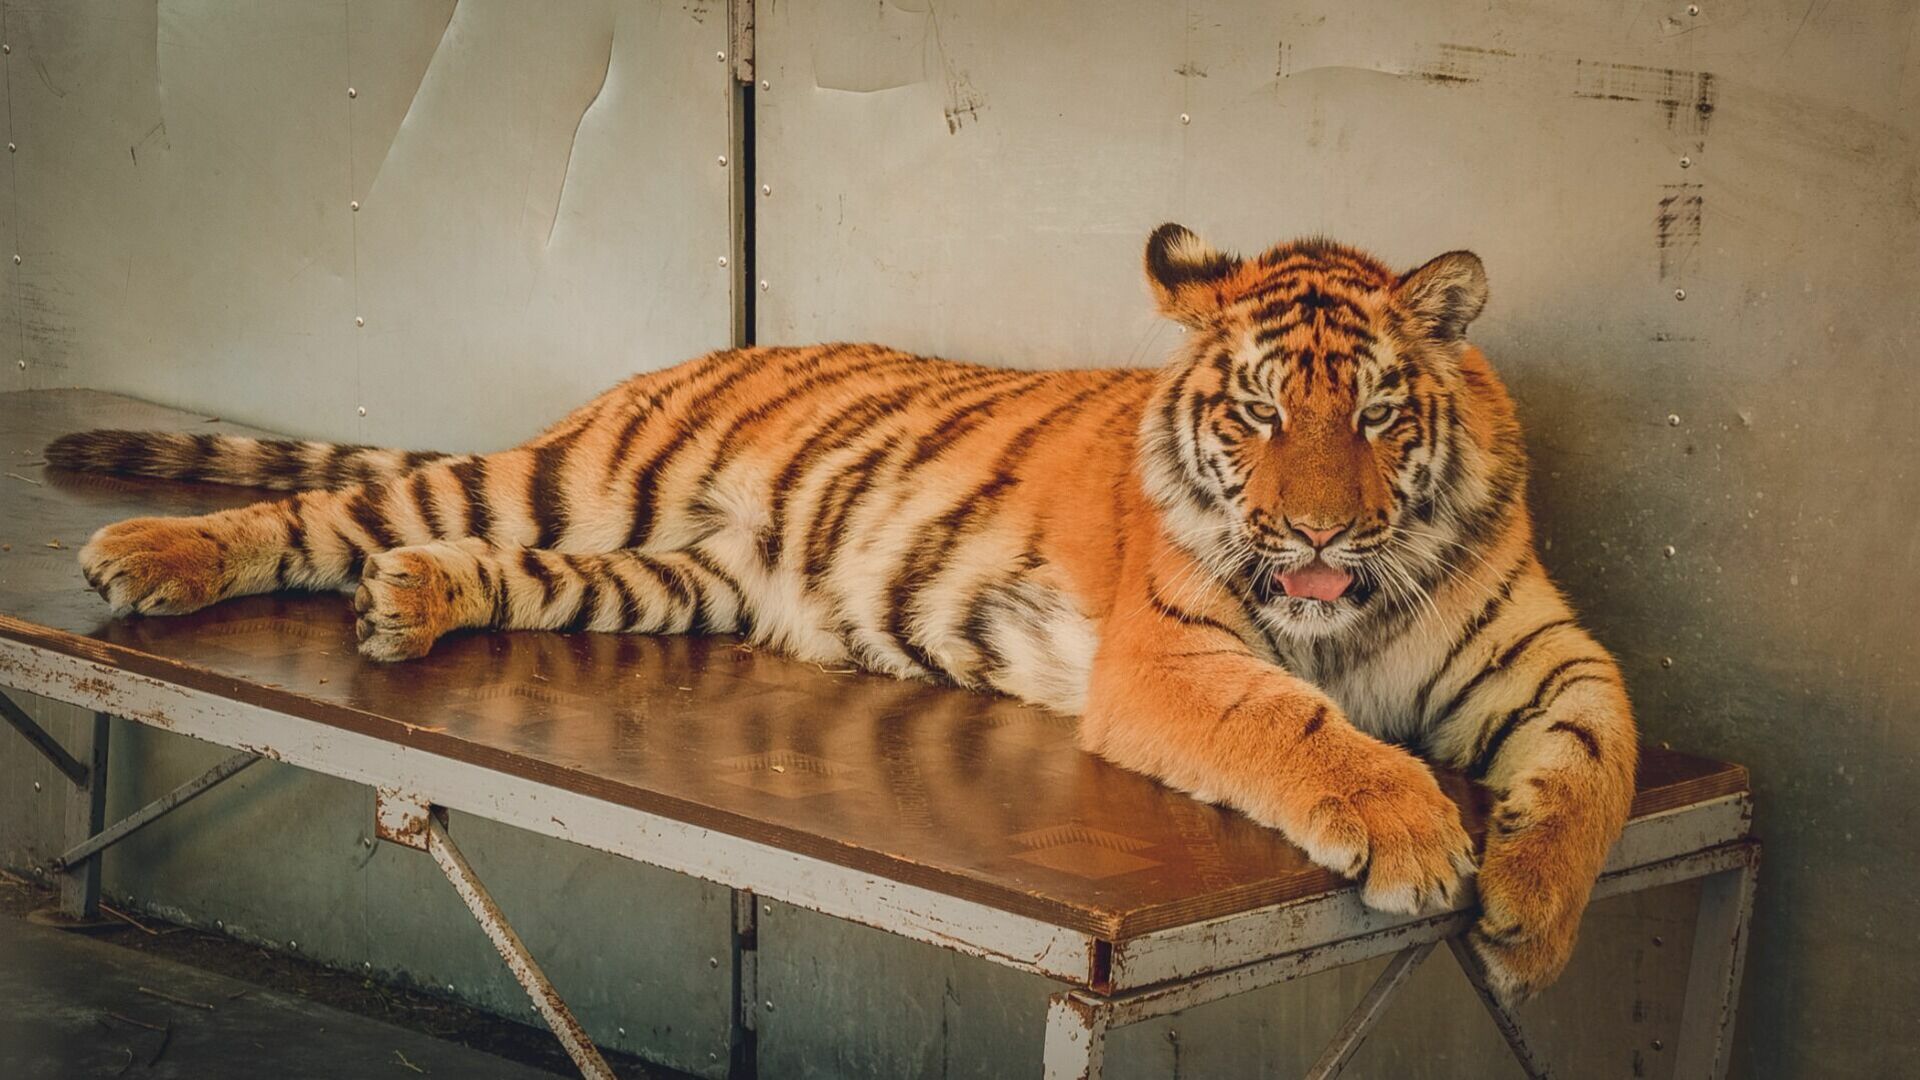 Проект в поддержку амурских тигров запущен центром «Амурский тигр» в Приморье